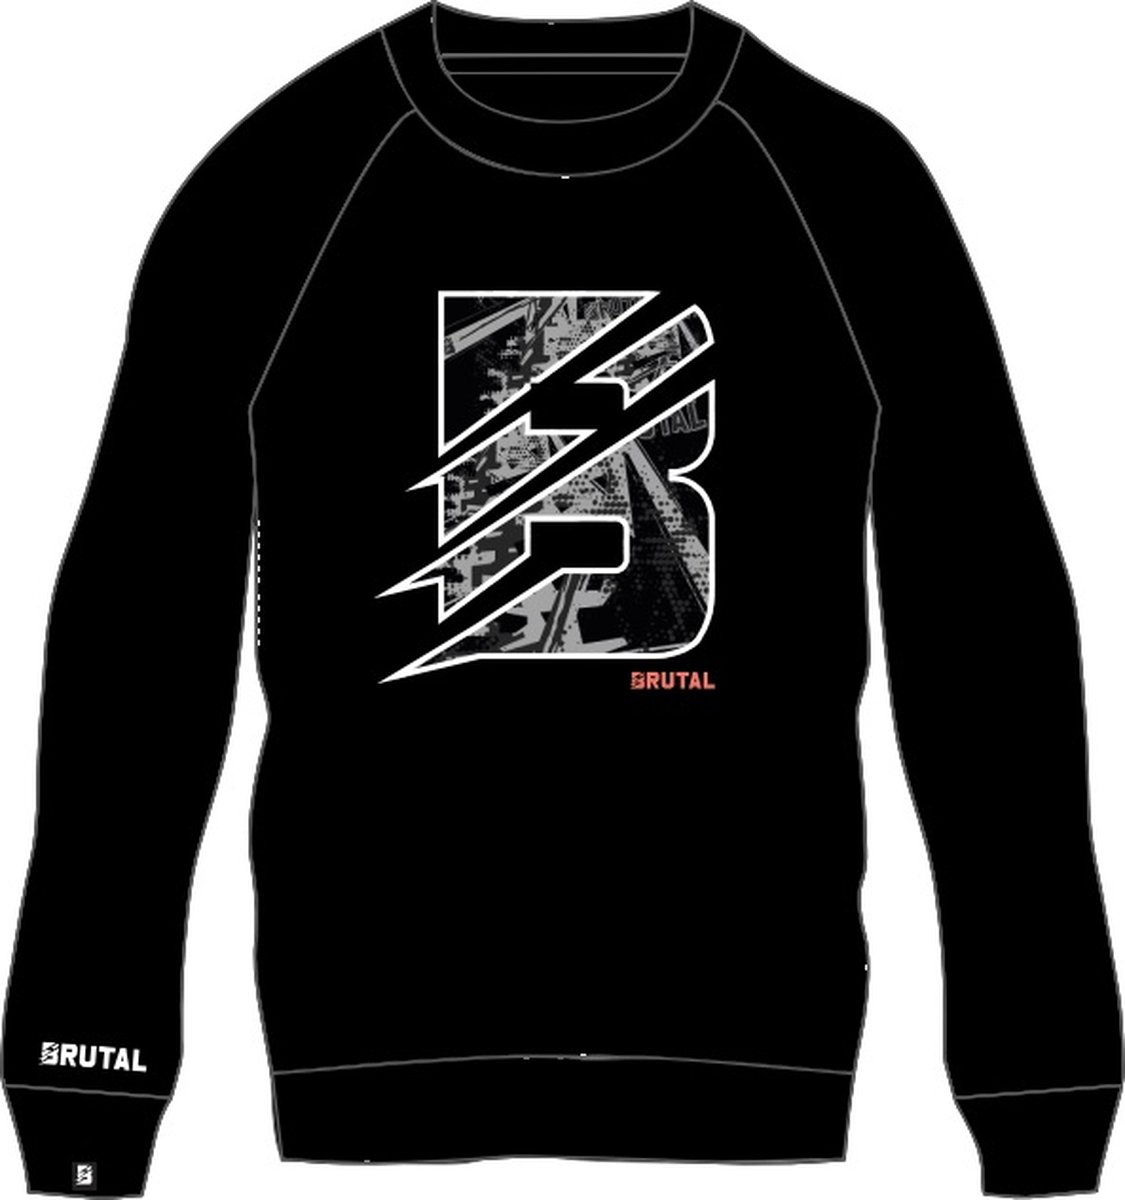 BRUTAL® - Sweater - Sweatshirt Trui - Trui - Zwart - Grijs - Trui - Heren -Dames - Maat M